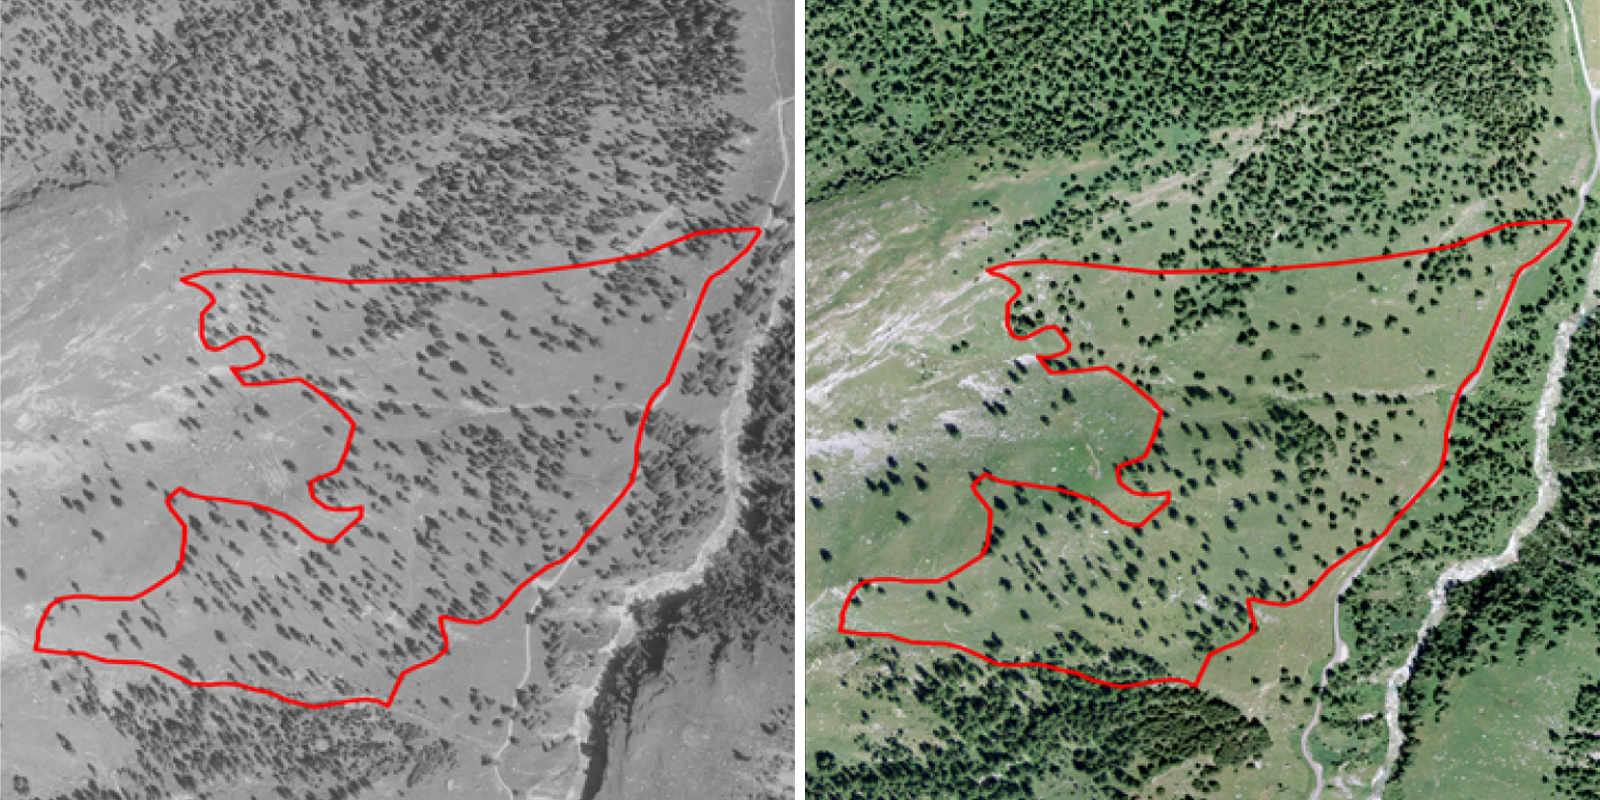 Luftbildvergleich Cröterwald 1957 und 2015